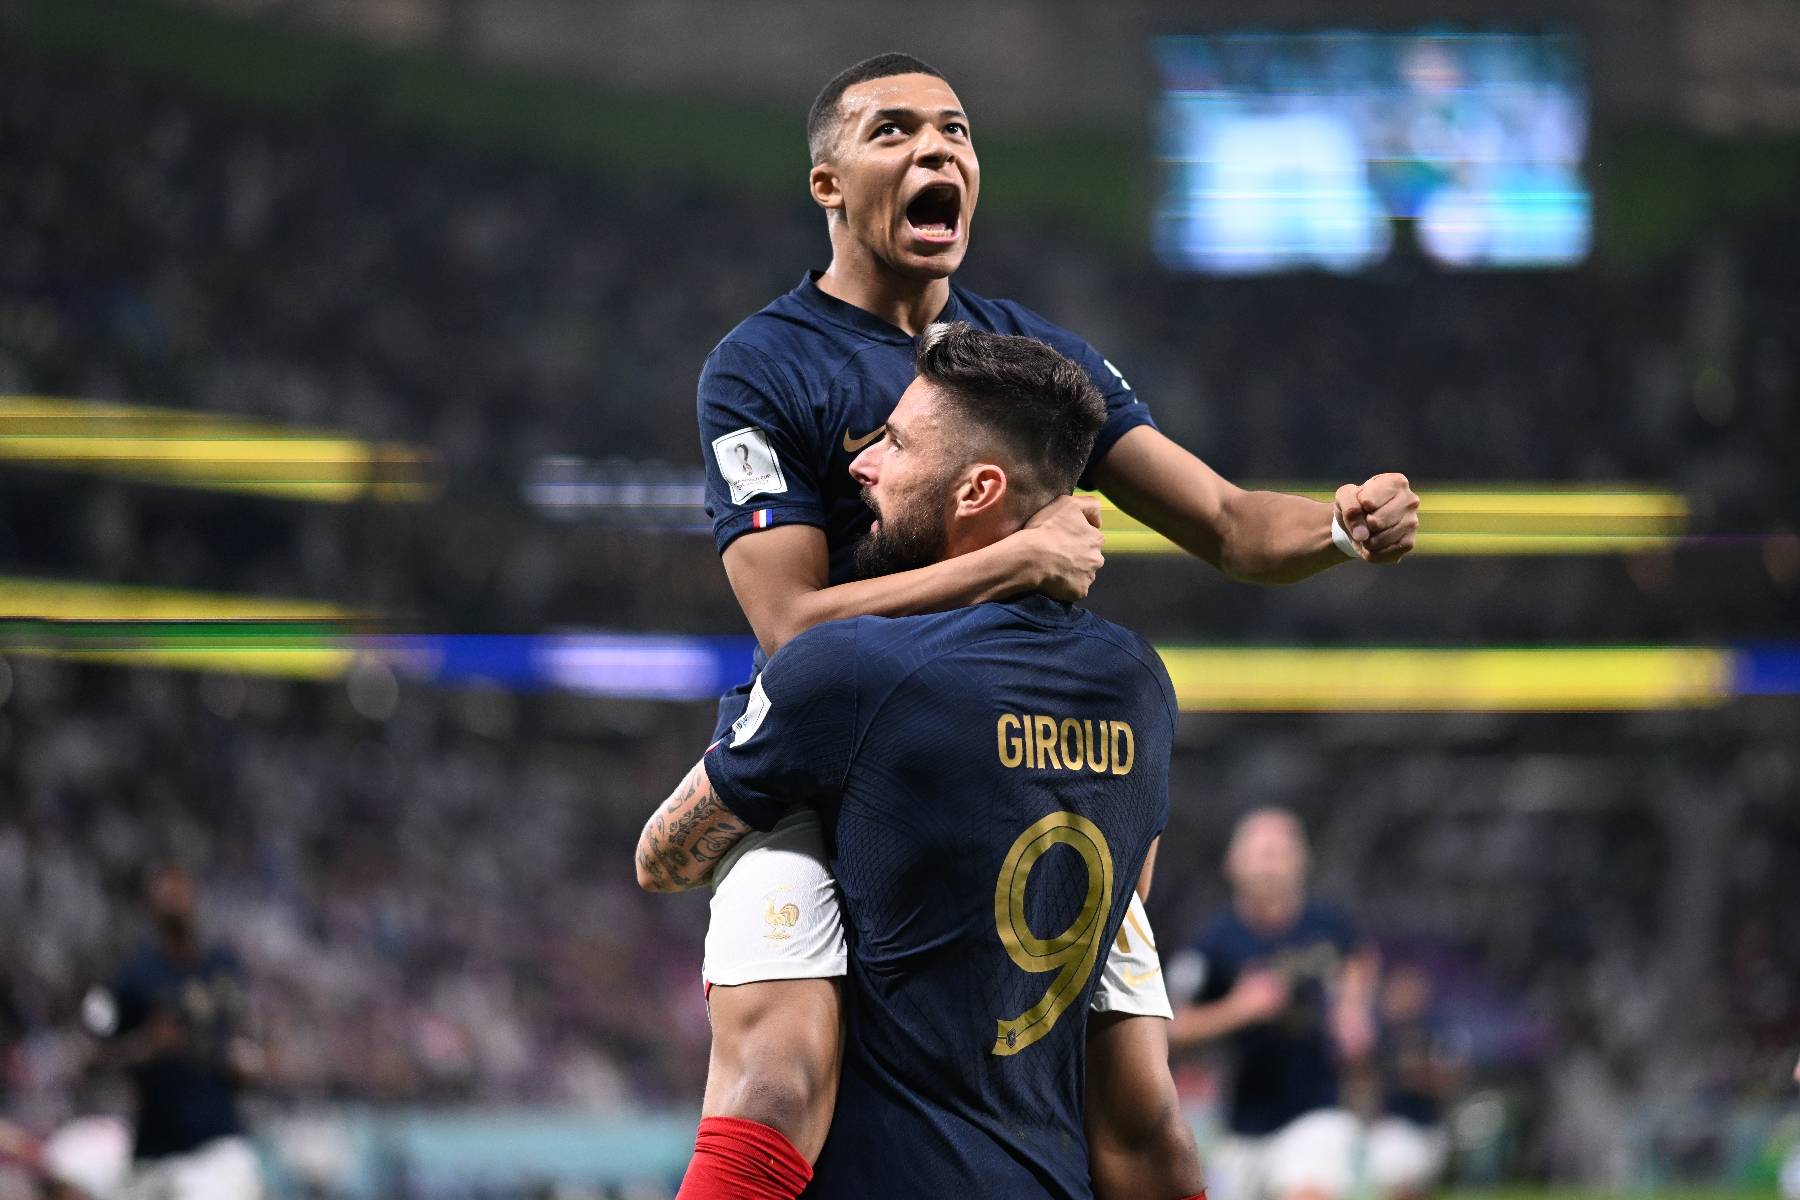 Mondial-2022: la France prend son quart, Giroud et Mbappé prennent leur pied